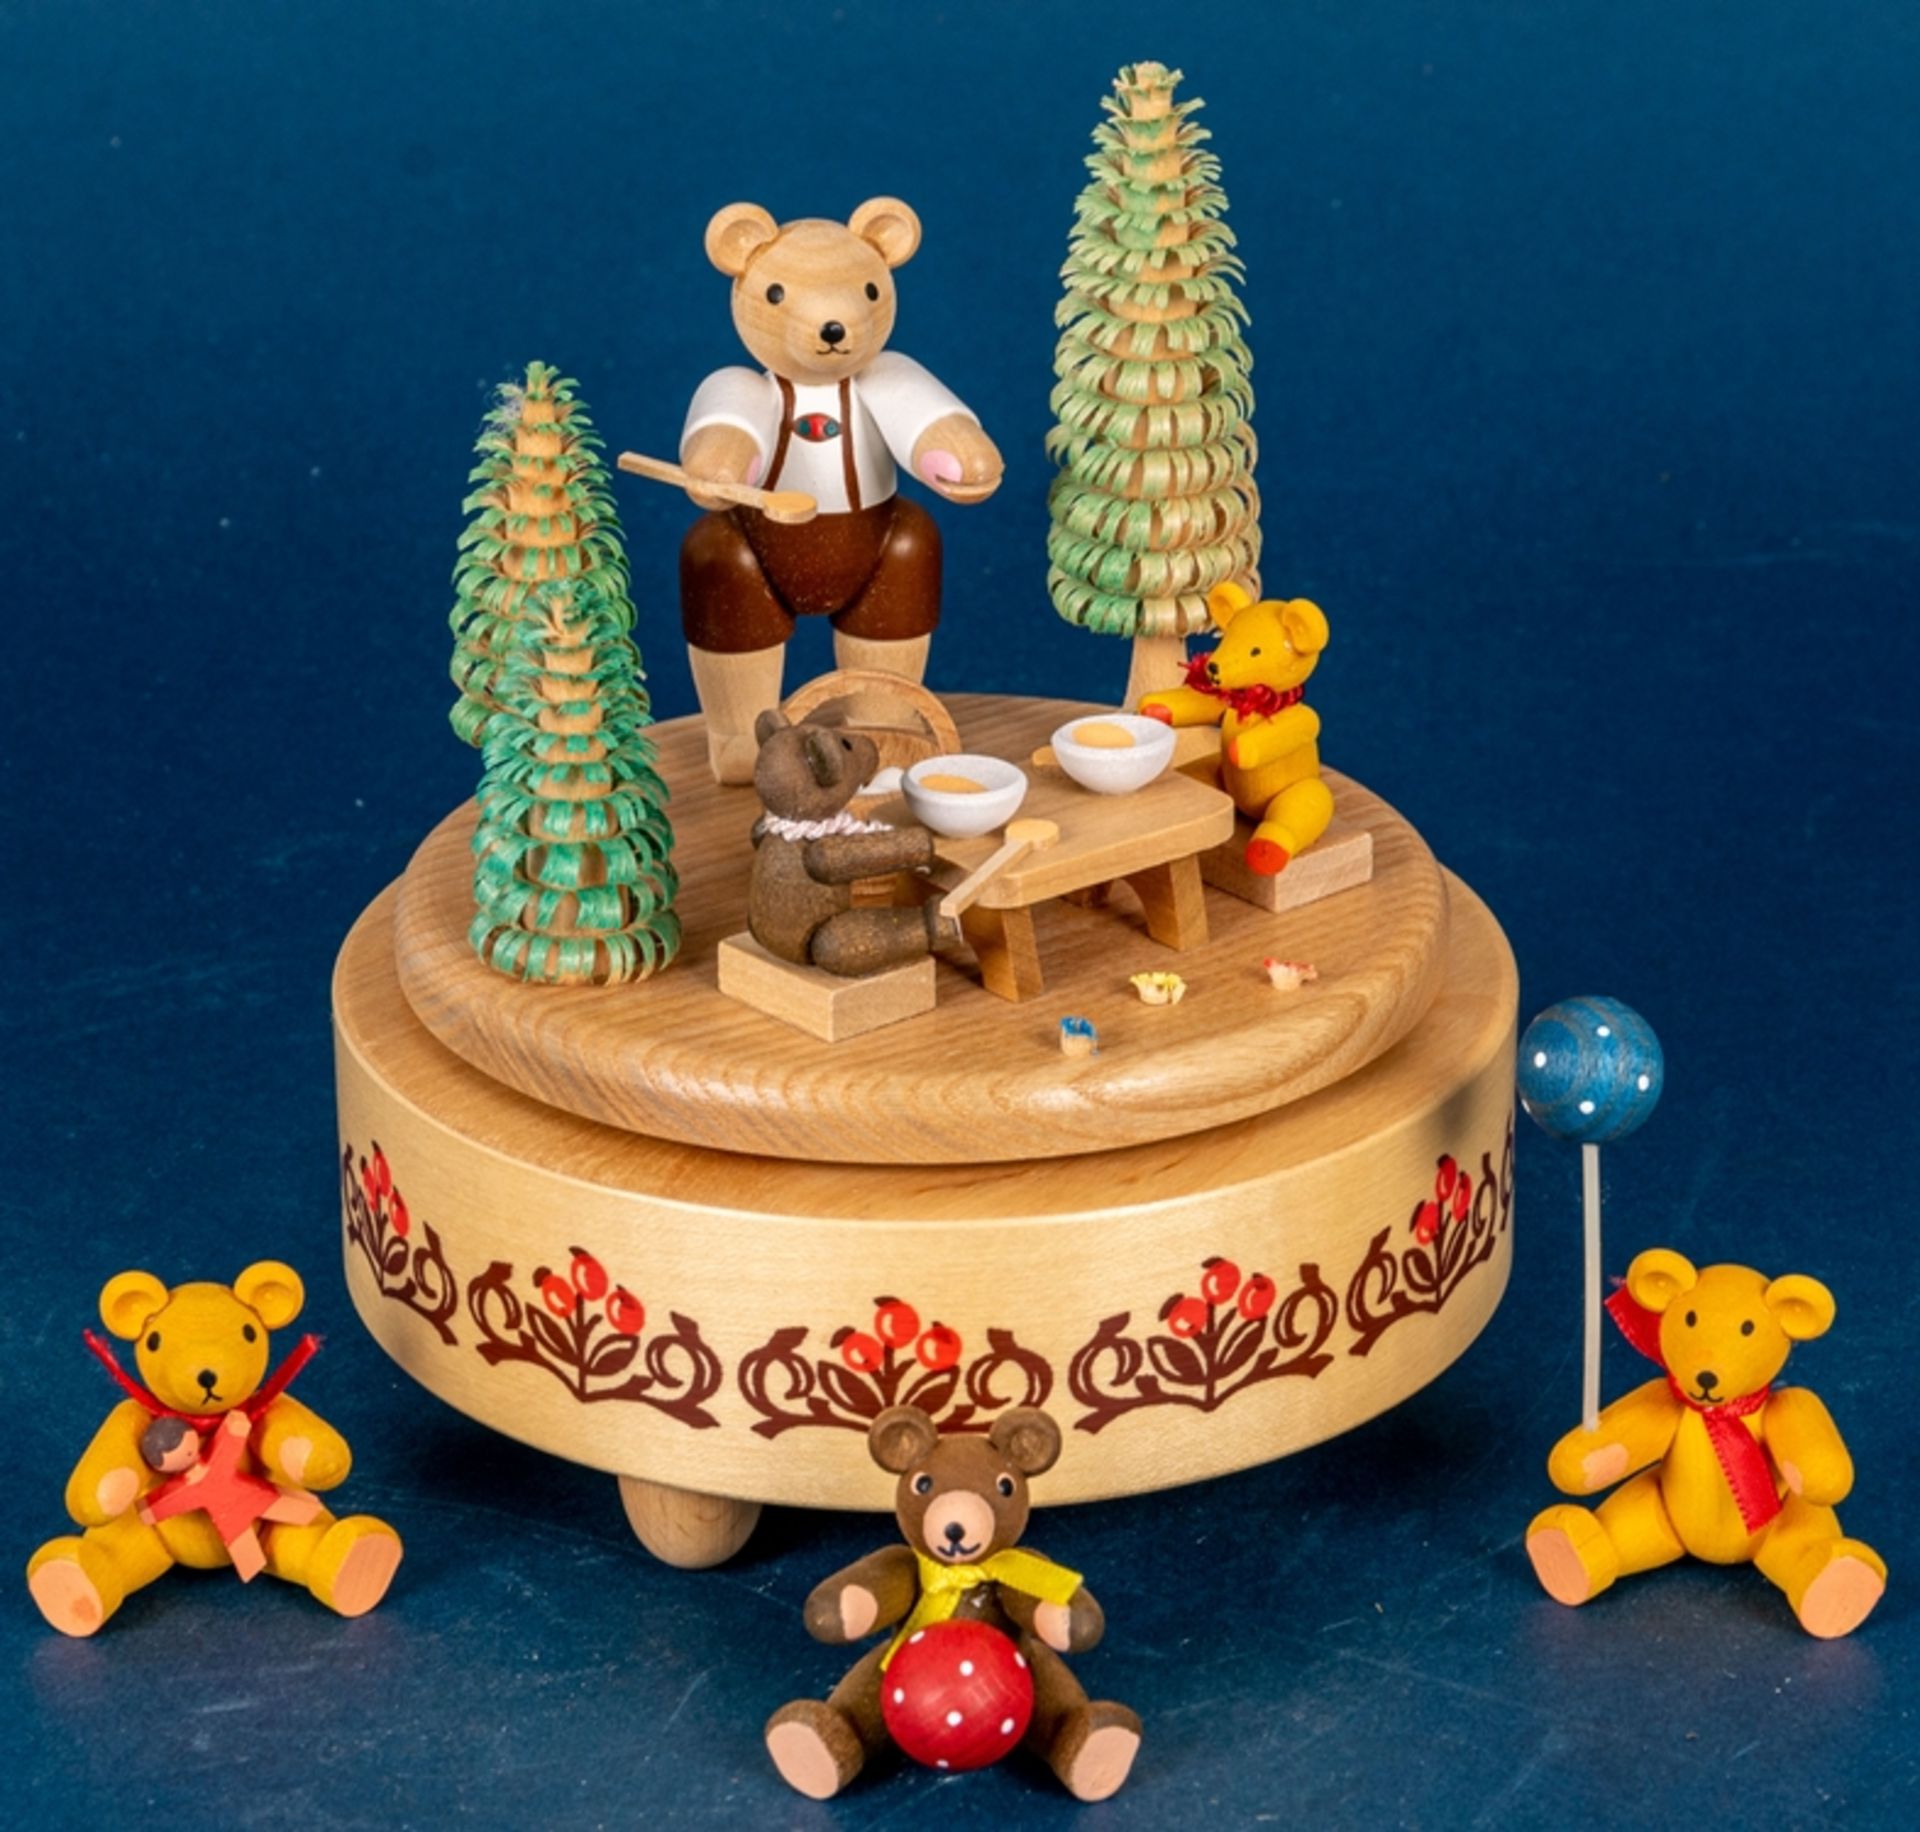 Spieluhr mit Bären (Schweizer Uhrwerk) im Wald beim Honigessen. Fa. "Glässer" (